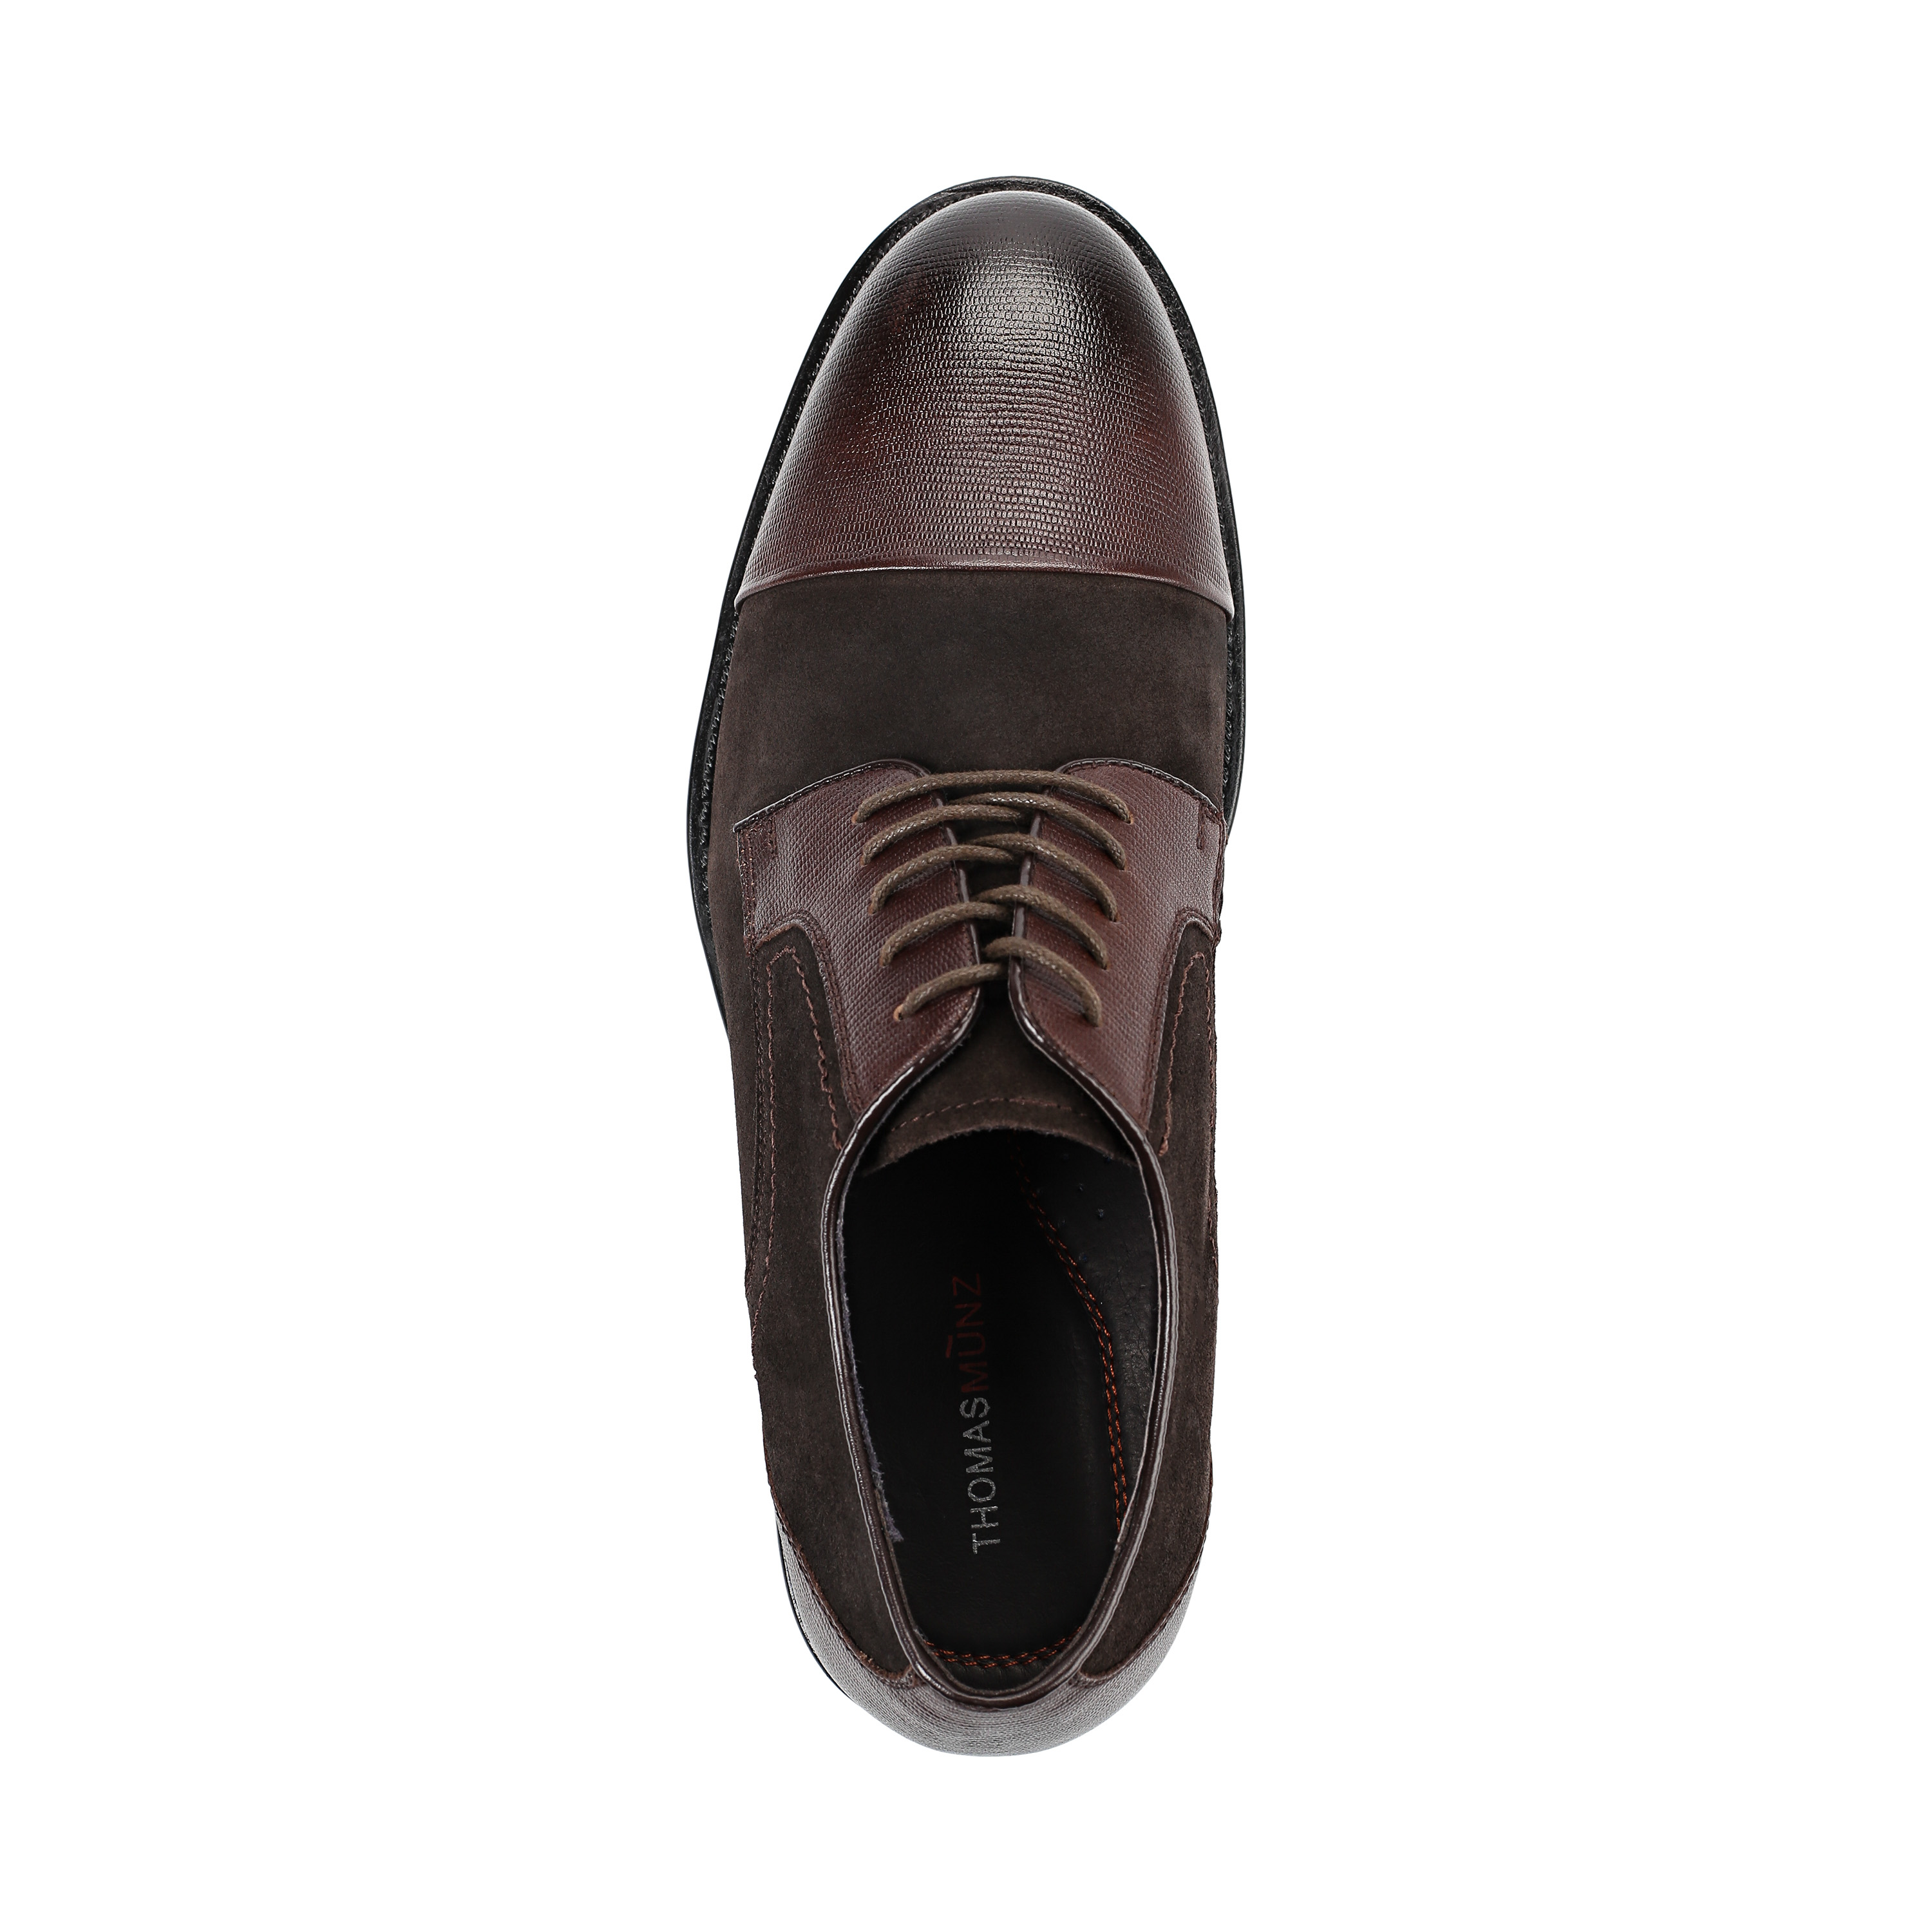 Туфли Thomas Munz 73-134C-1502, цвет коричневый, размер 40 дерби - фото 5